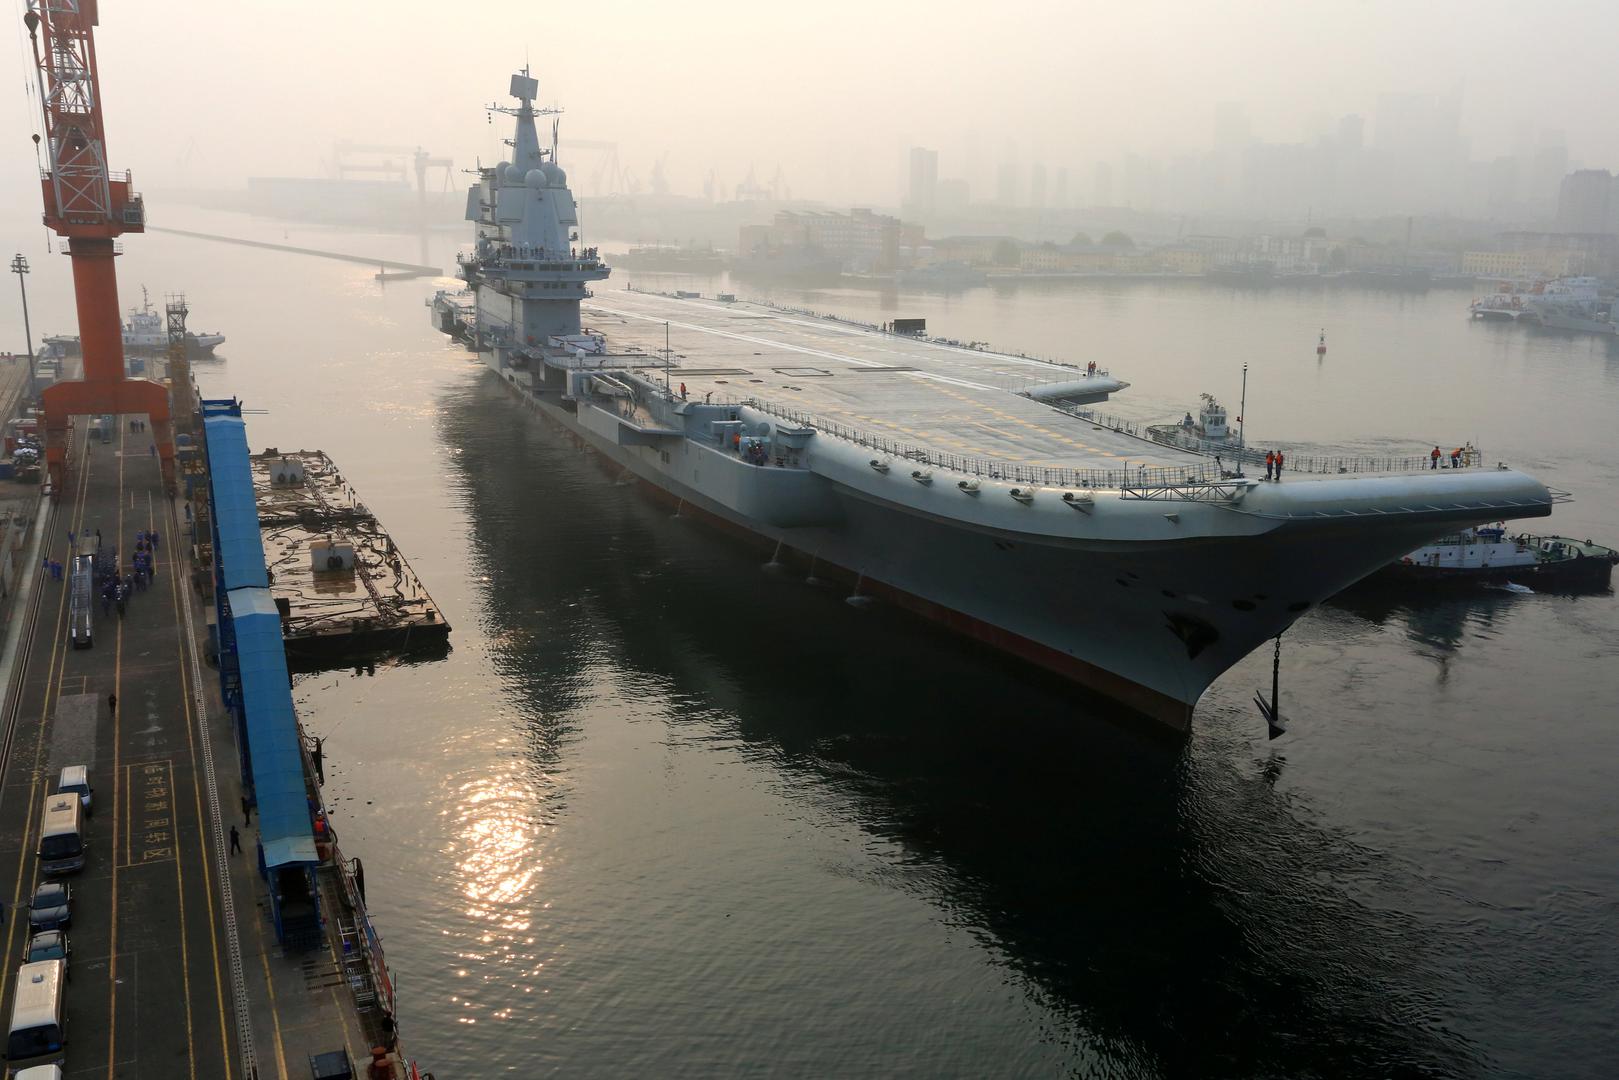 Kina je počela na moru testirati svoj prvi nosač zrakoplova domaće proizvodnje, pokazujući sve veću ambiciju u pogledu jačanja oružanih snaga. Brod je isplovio rano ujutro po mjesnom vremenu iz sjeveroistočne luke Dalian, priopćilo je ministarstvo obrane.